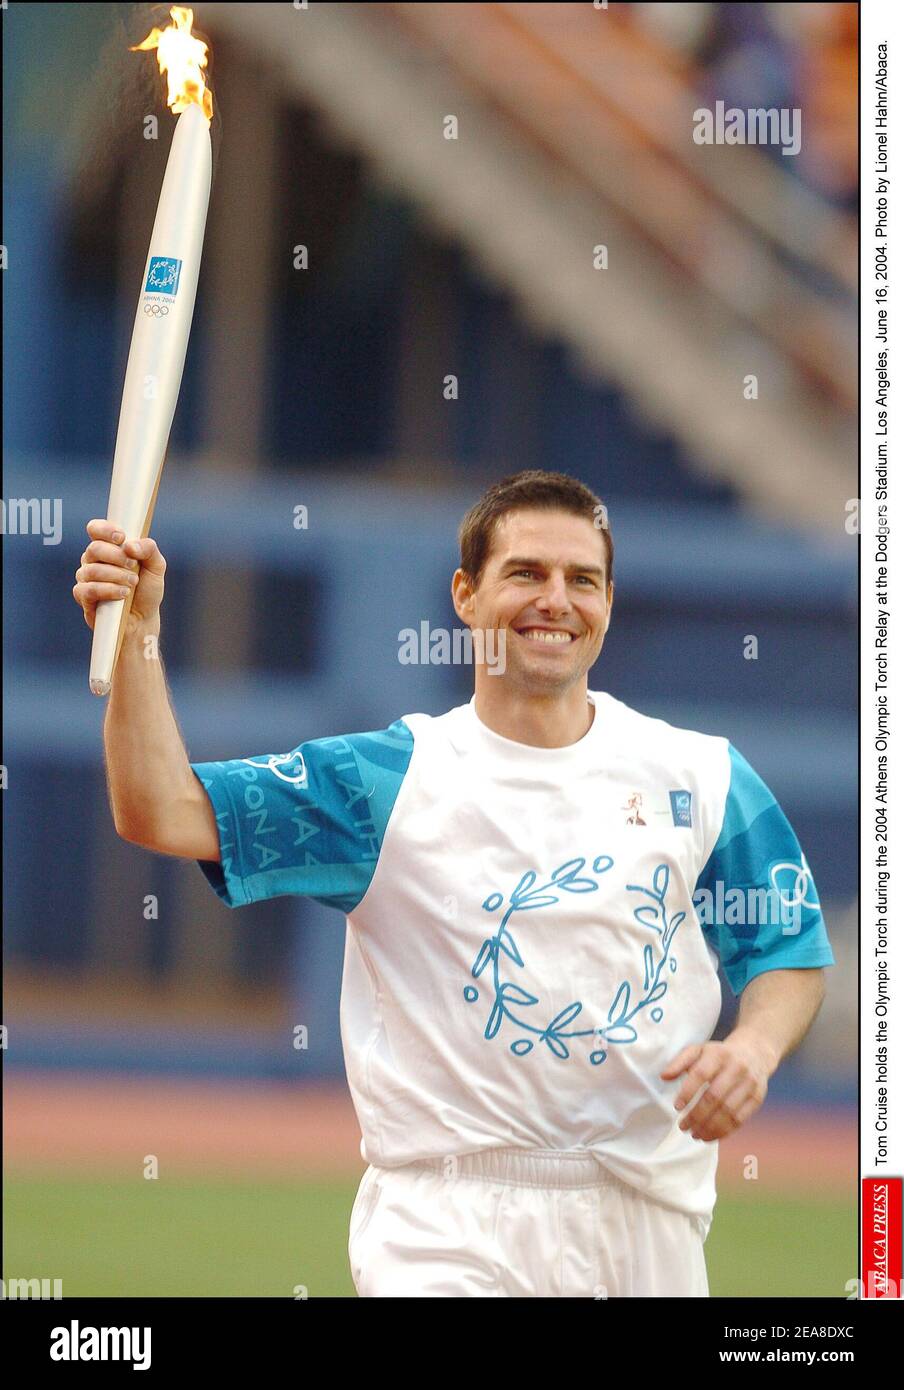 Tom Cruise tiene la torcia olimpica durante il relè della torcia olimpica di Atene 2004 al Dodgers Stadium. Los Angeles, 16 giugno 2004. Foto di Lionel Hahn/Abaca. Foto Stock